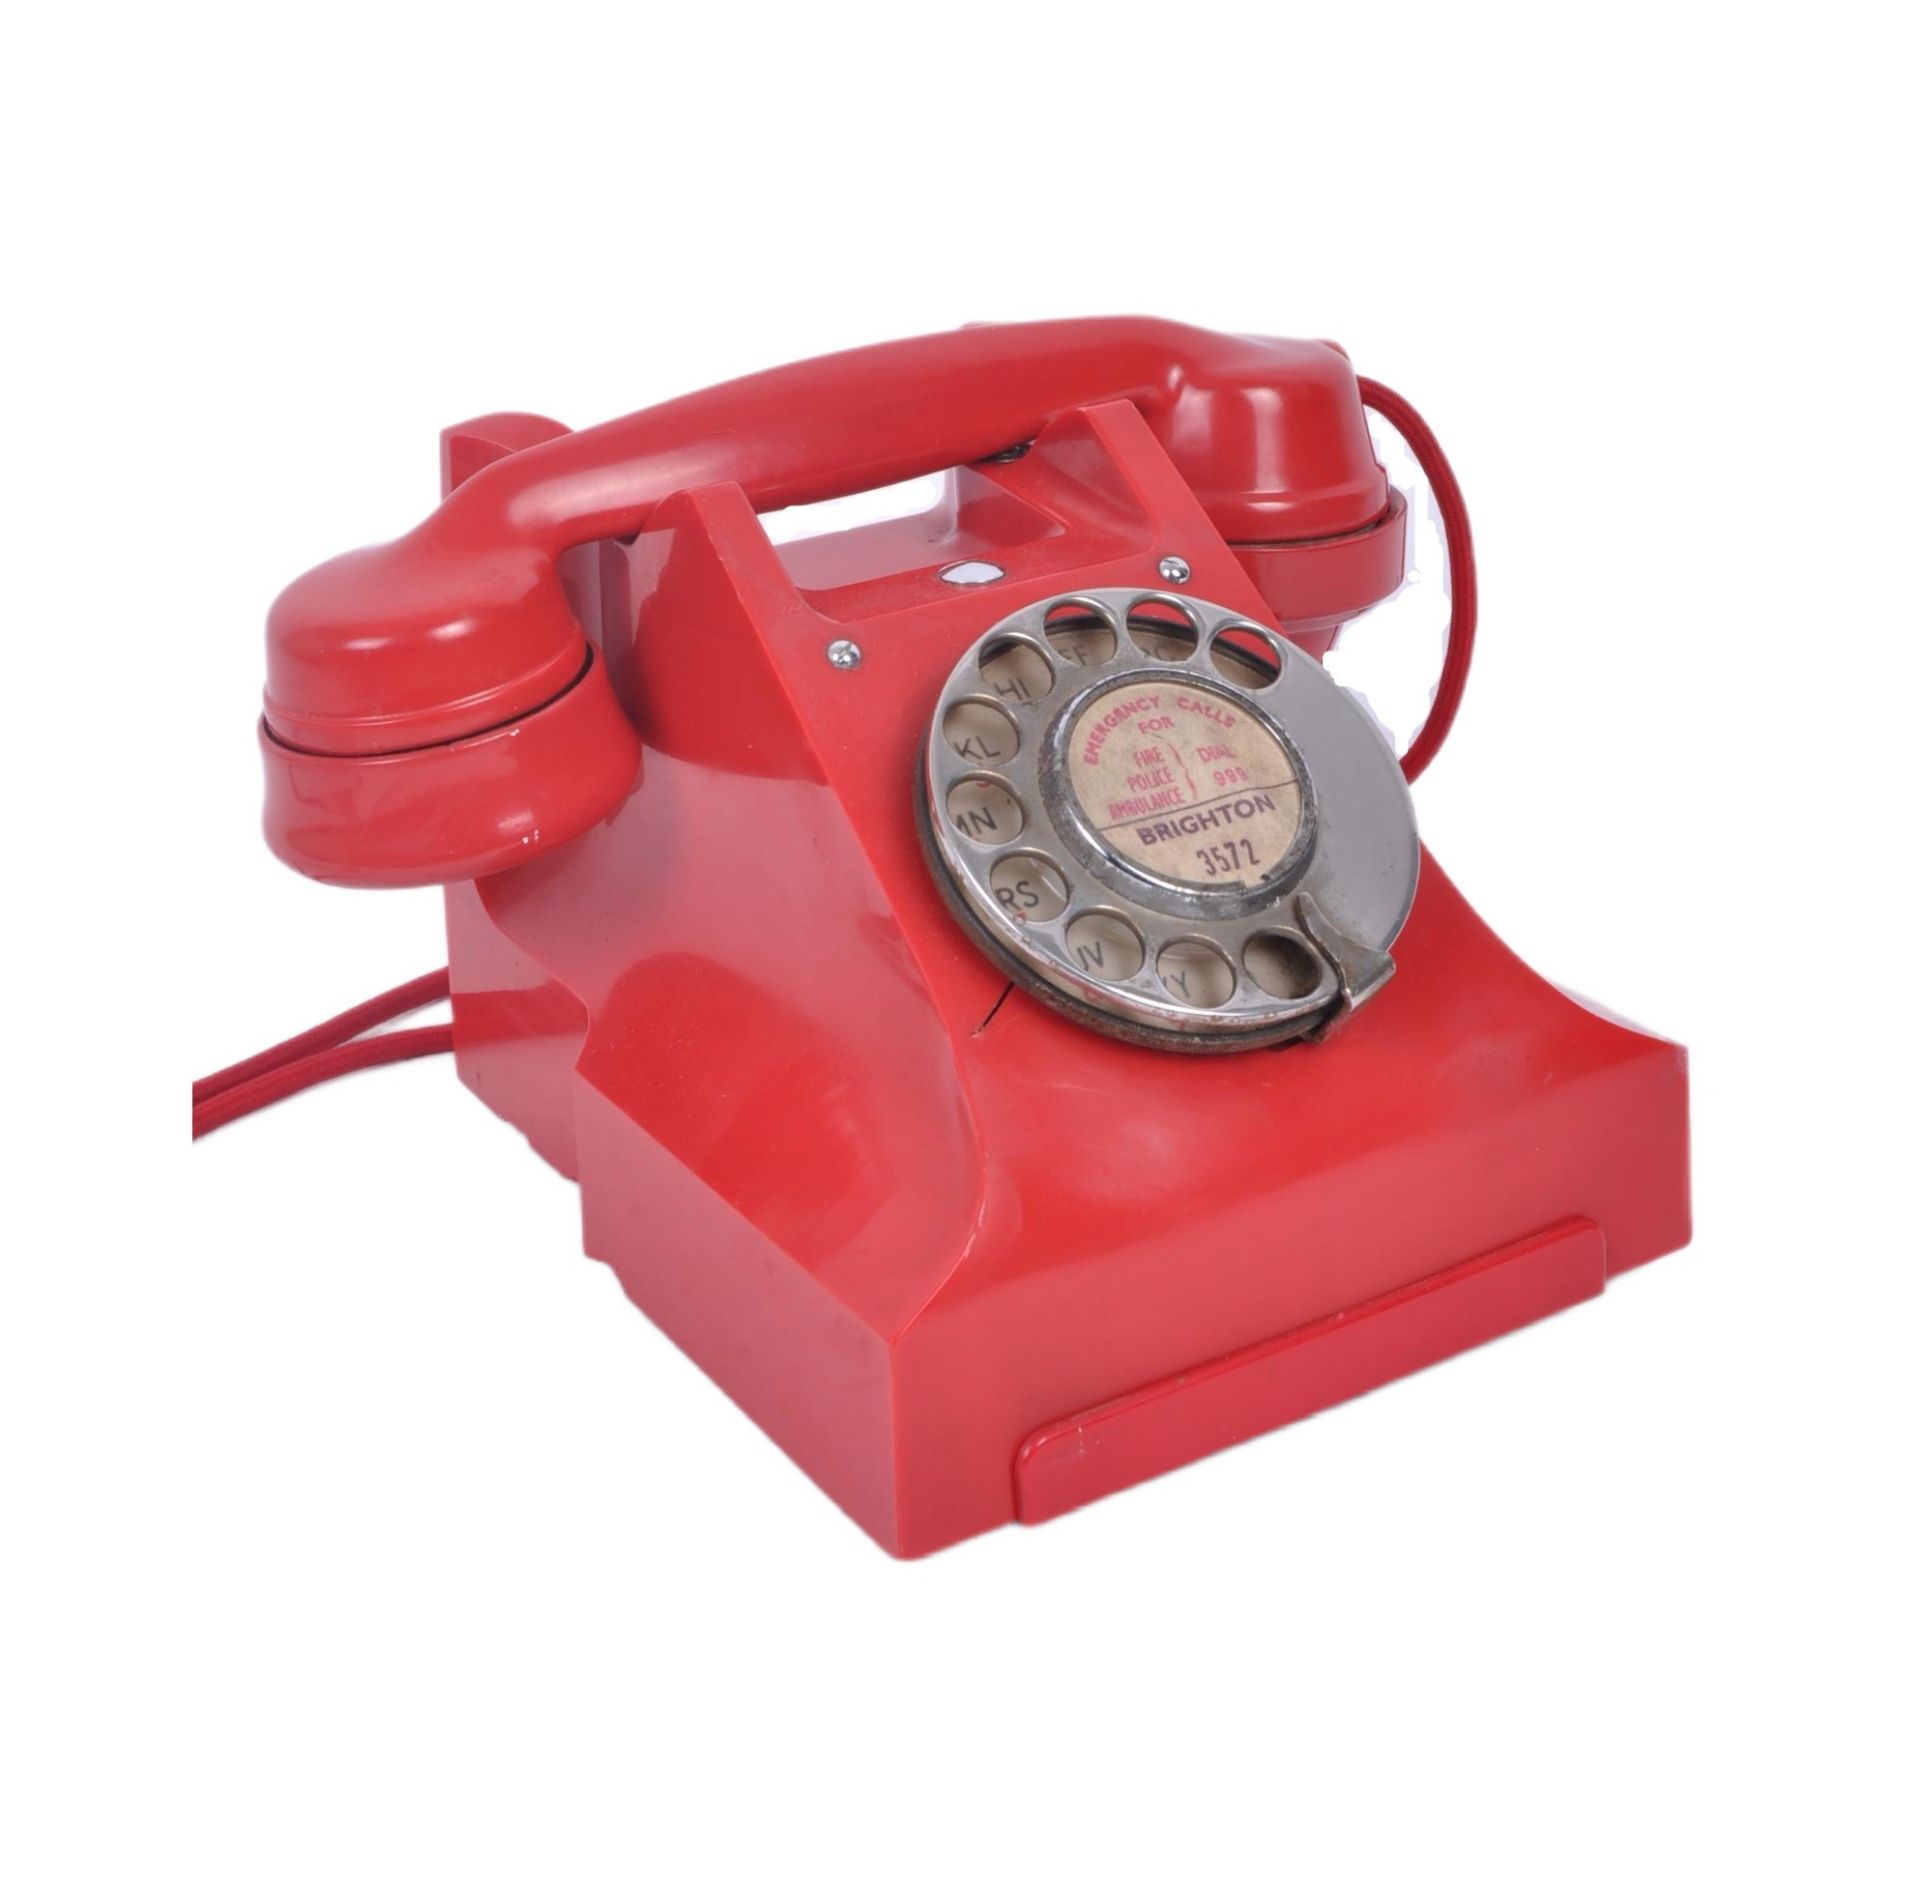 RED RETRO MIDCENTURY BAKELITE DESK TELEPHONE, 300 TYPE